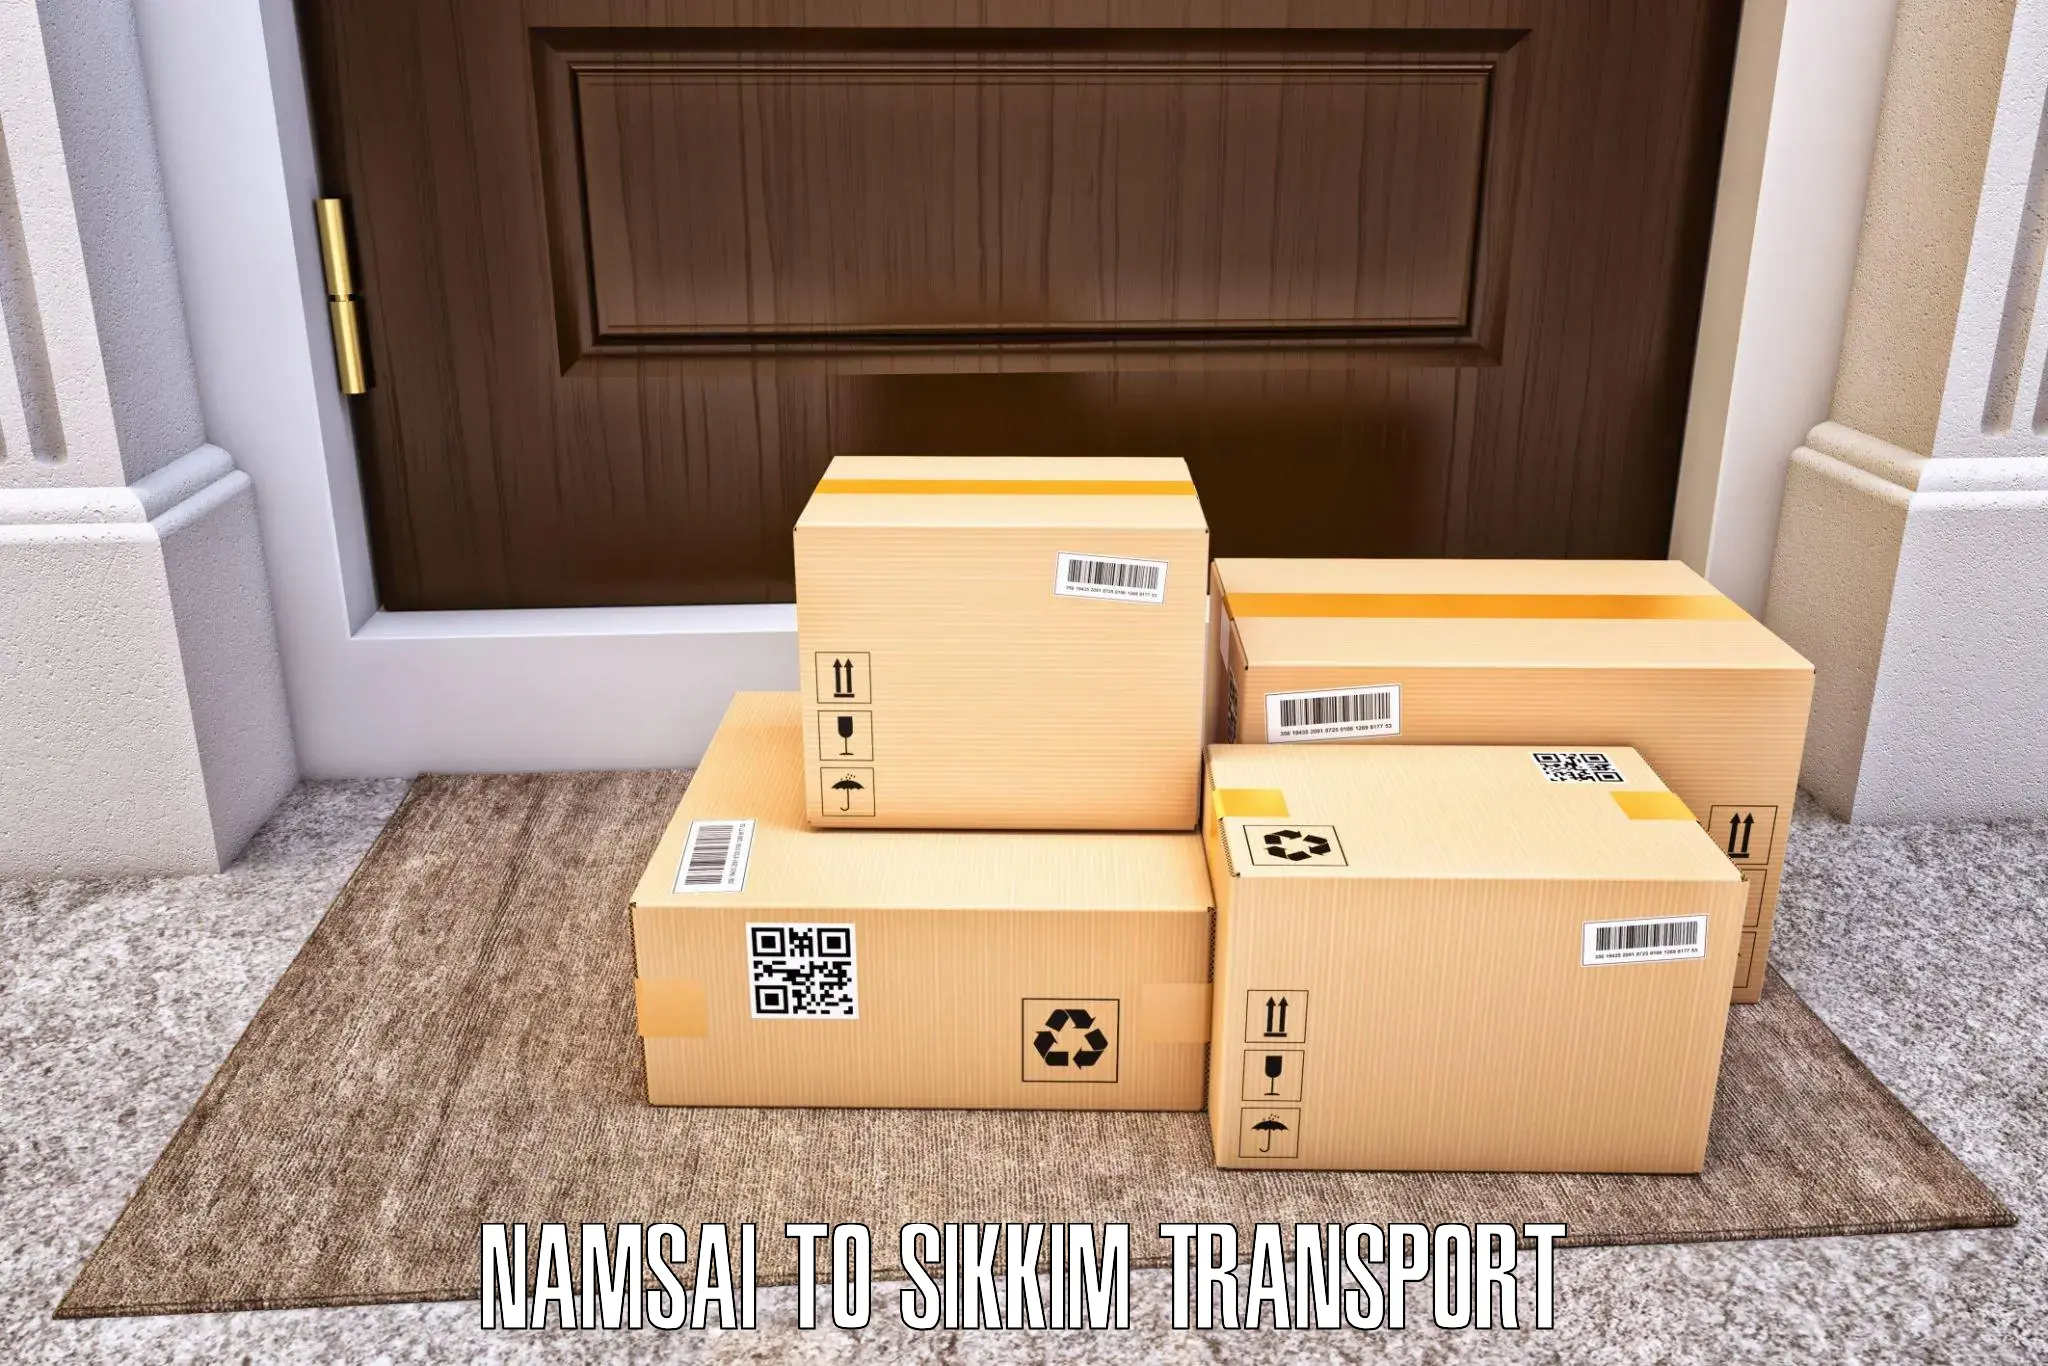 Furniture transport service Namsai to NIT Sikkim